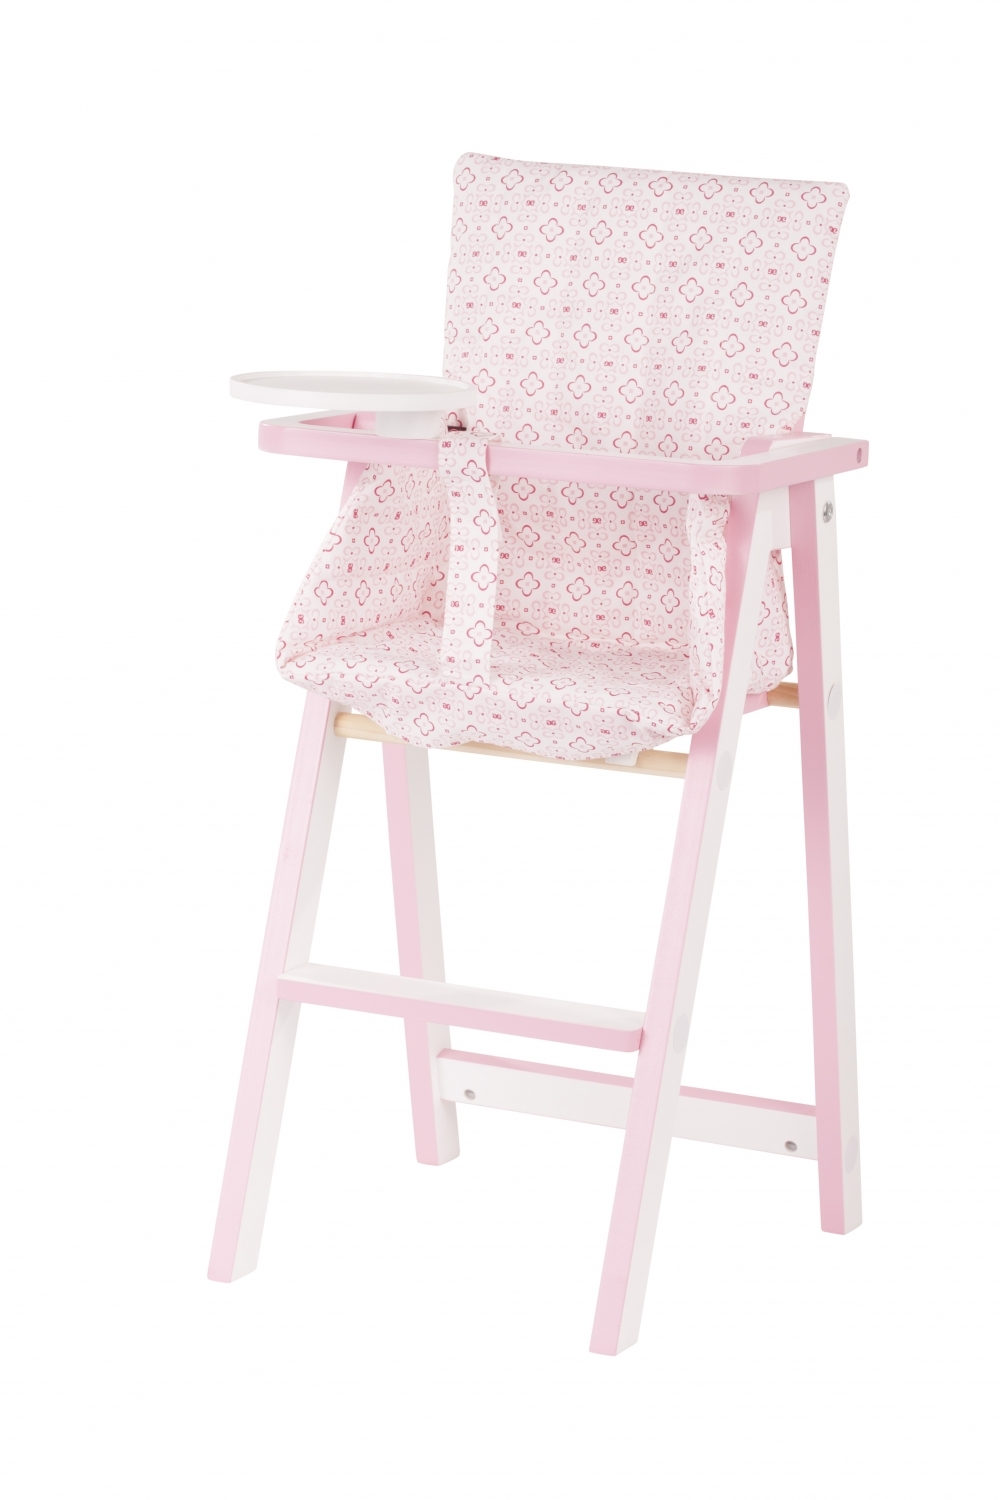 nabootsen vallei lichtgewicht Poppenstoel, houten stoel, Götz accessoire voor alle poppen, kinderstoeltje  pop